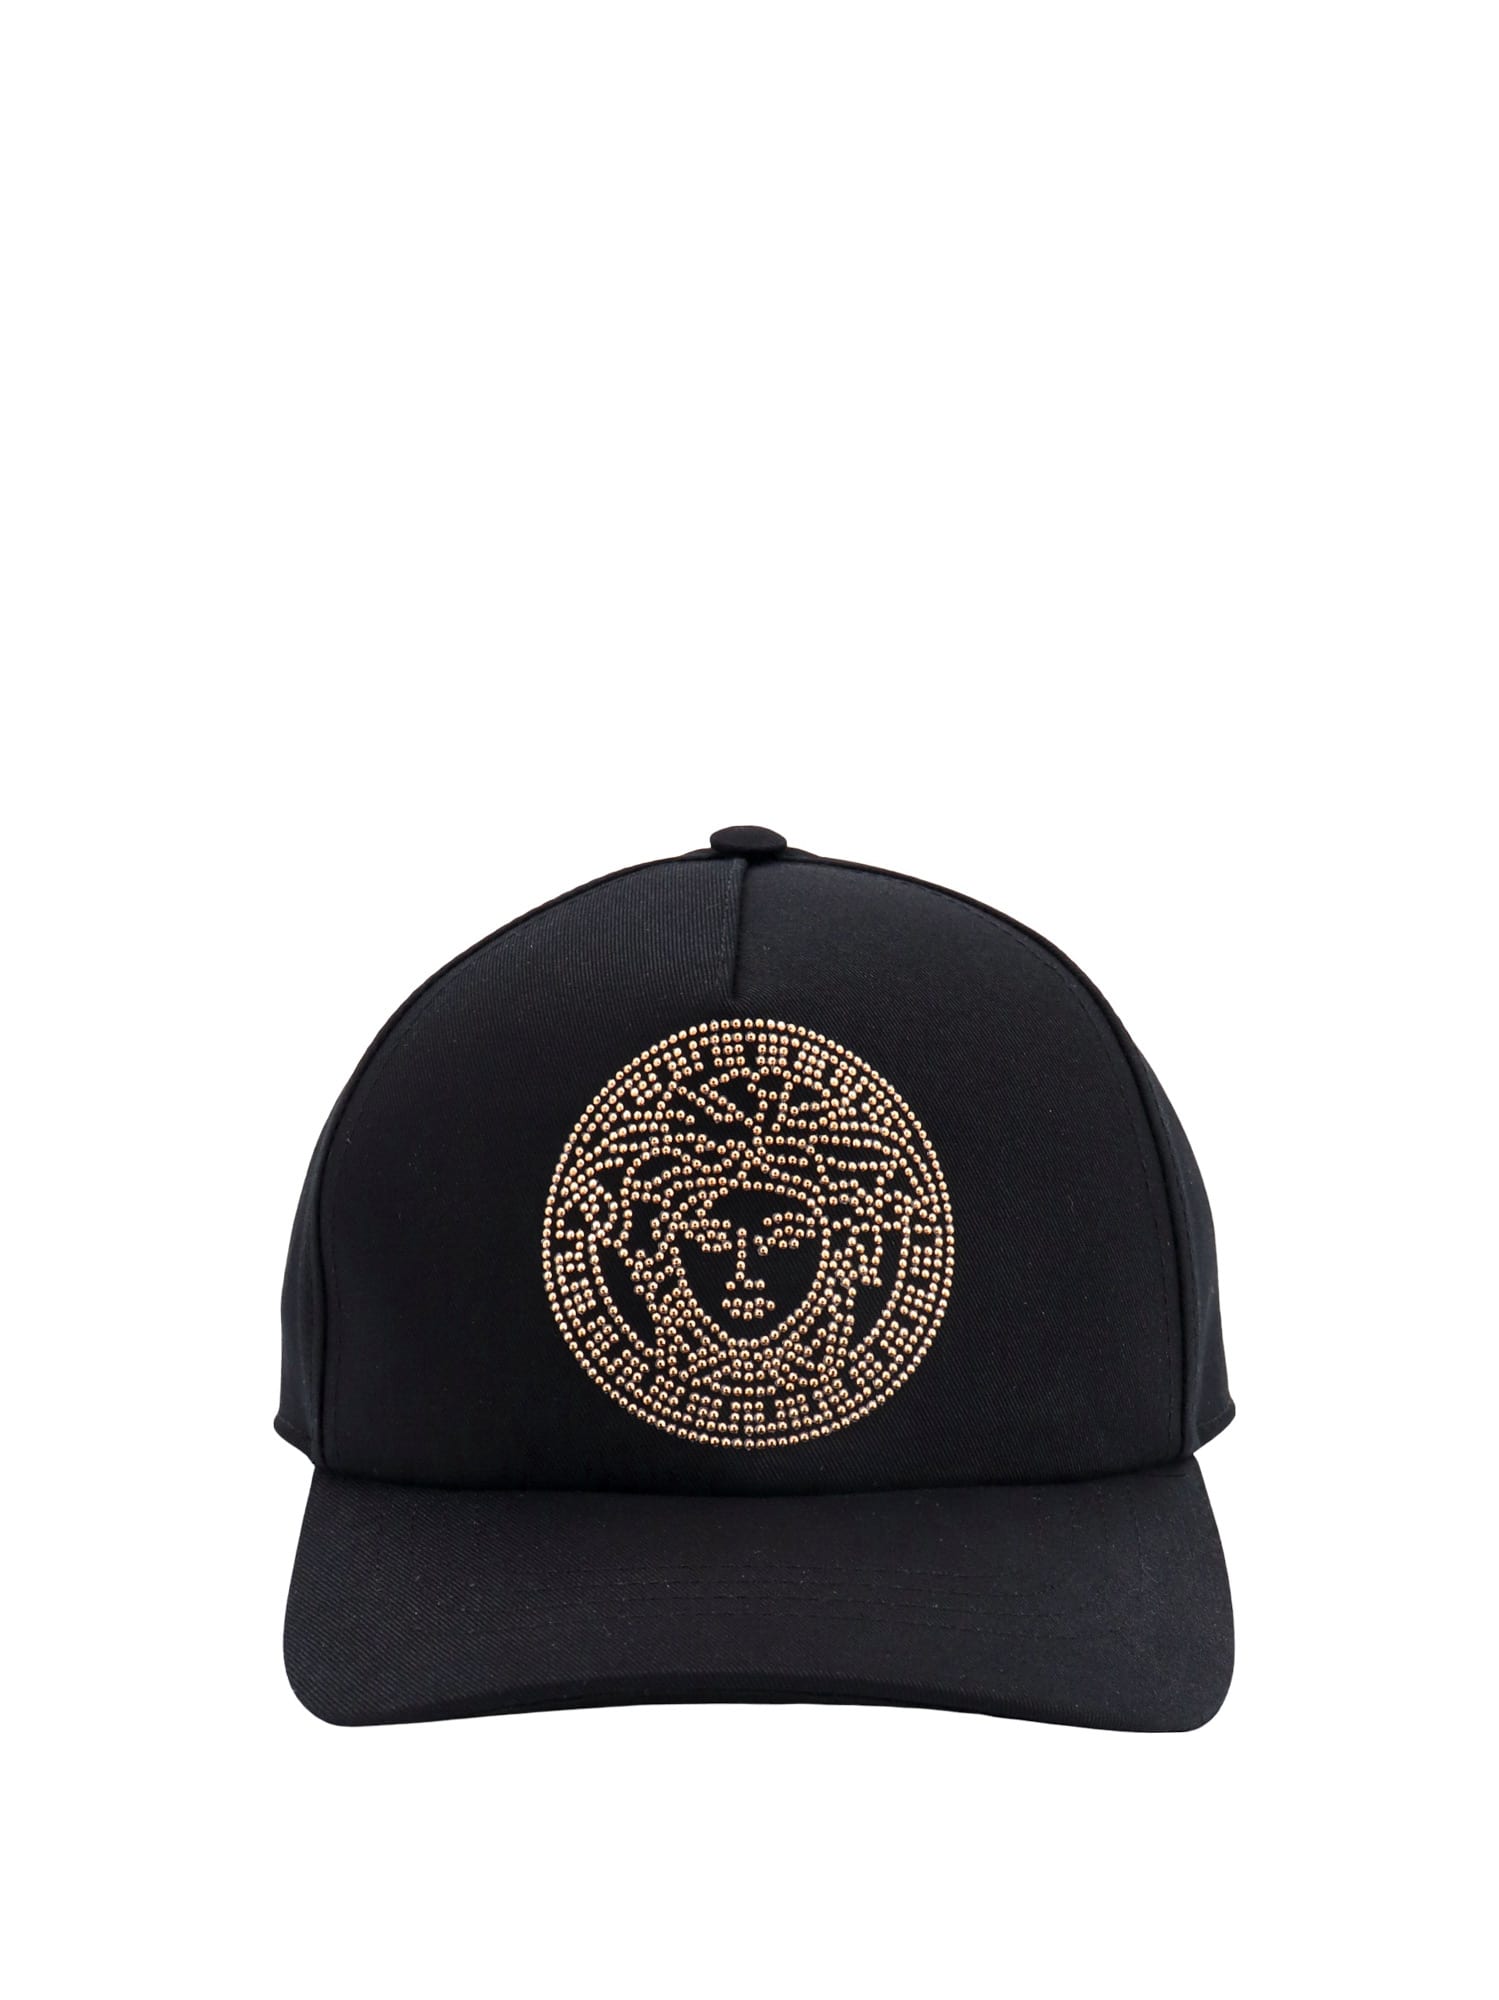 Versace Hat In Black